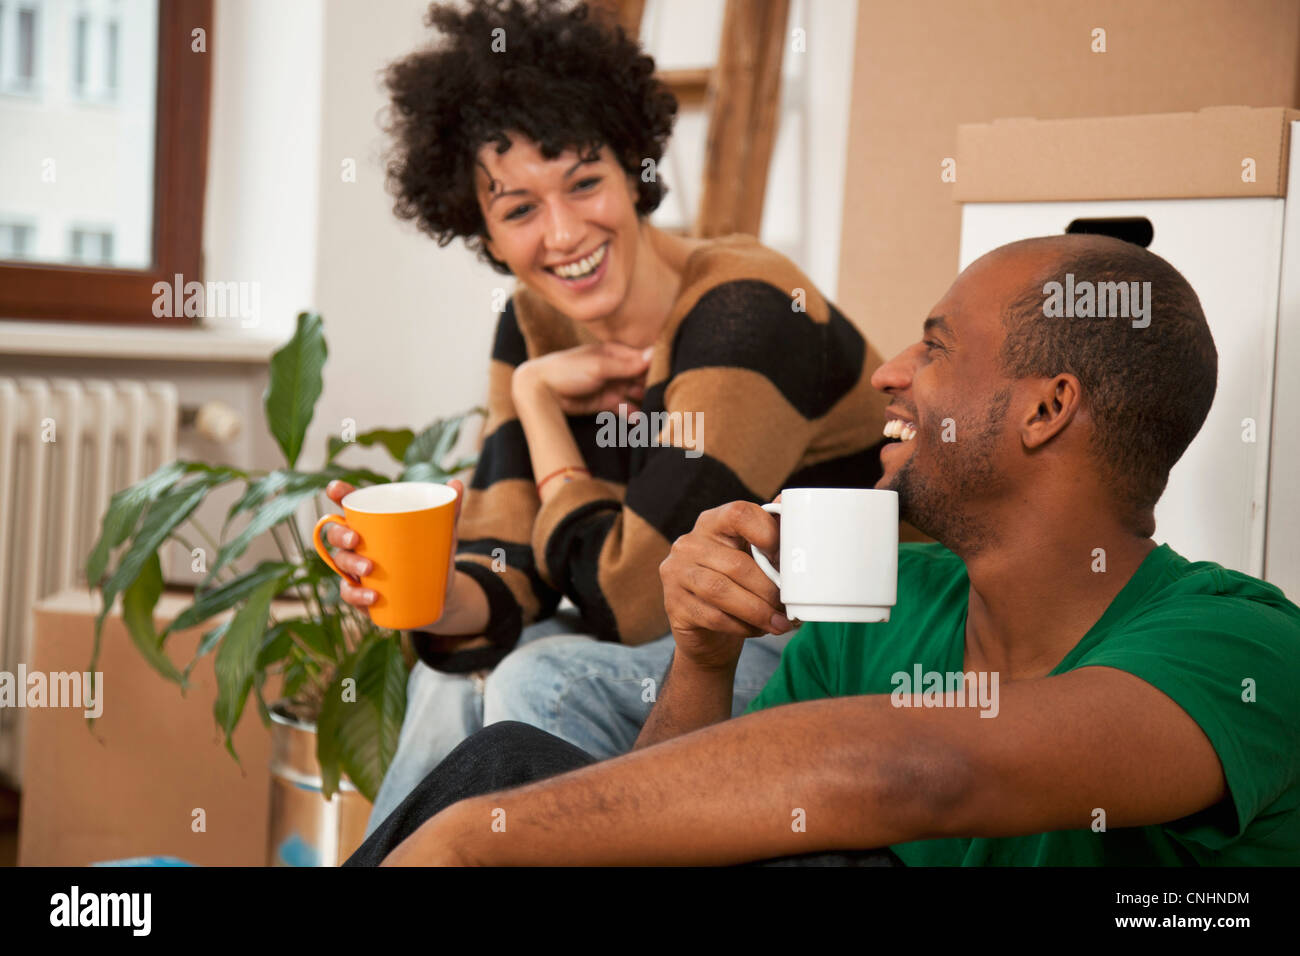 Una ridente giovane prendendo una pausa caffè mentre il trasloco, close-up Foto Stock